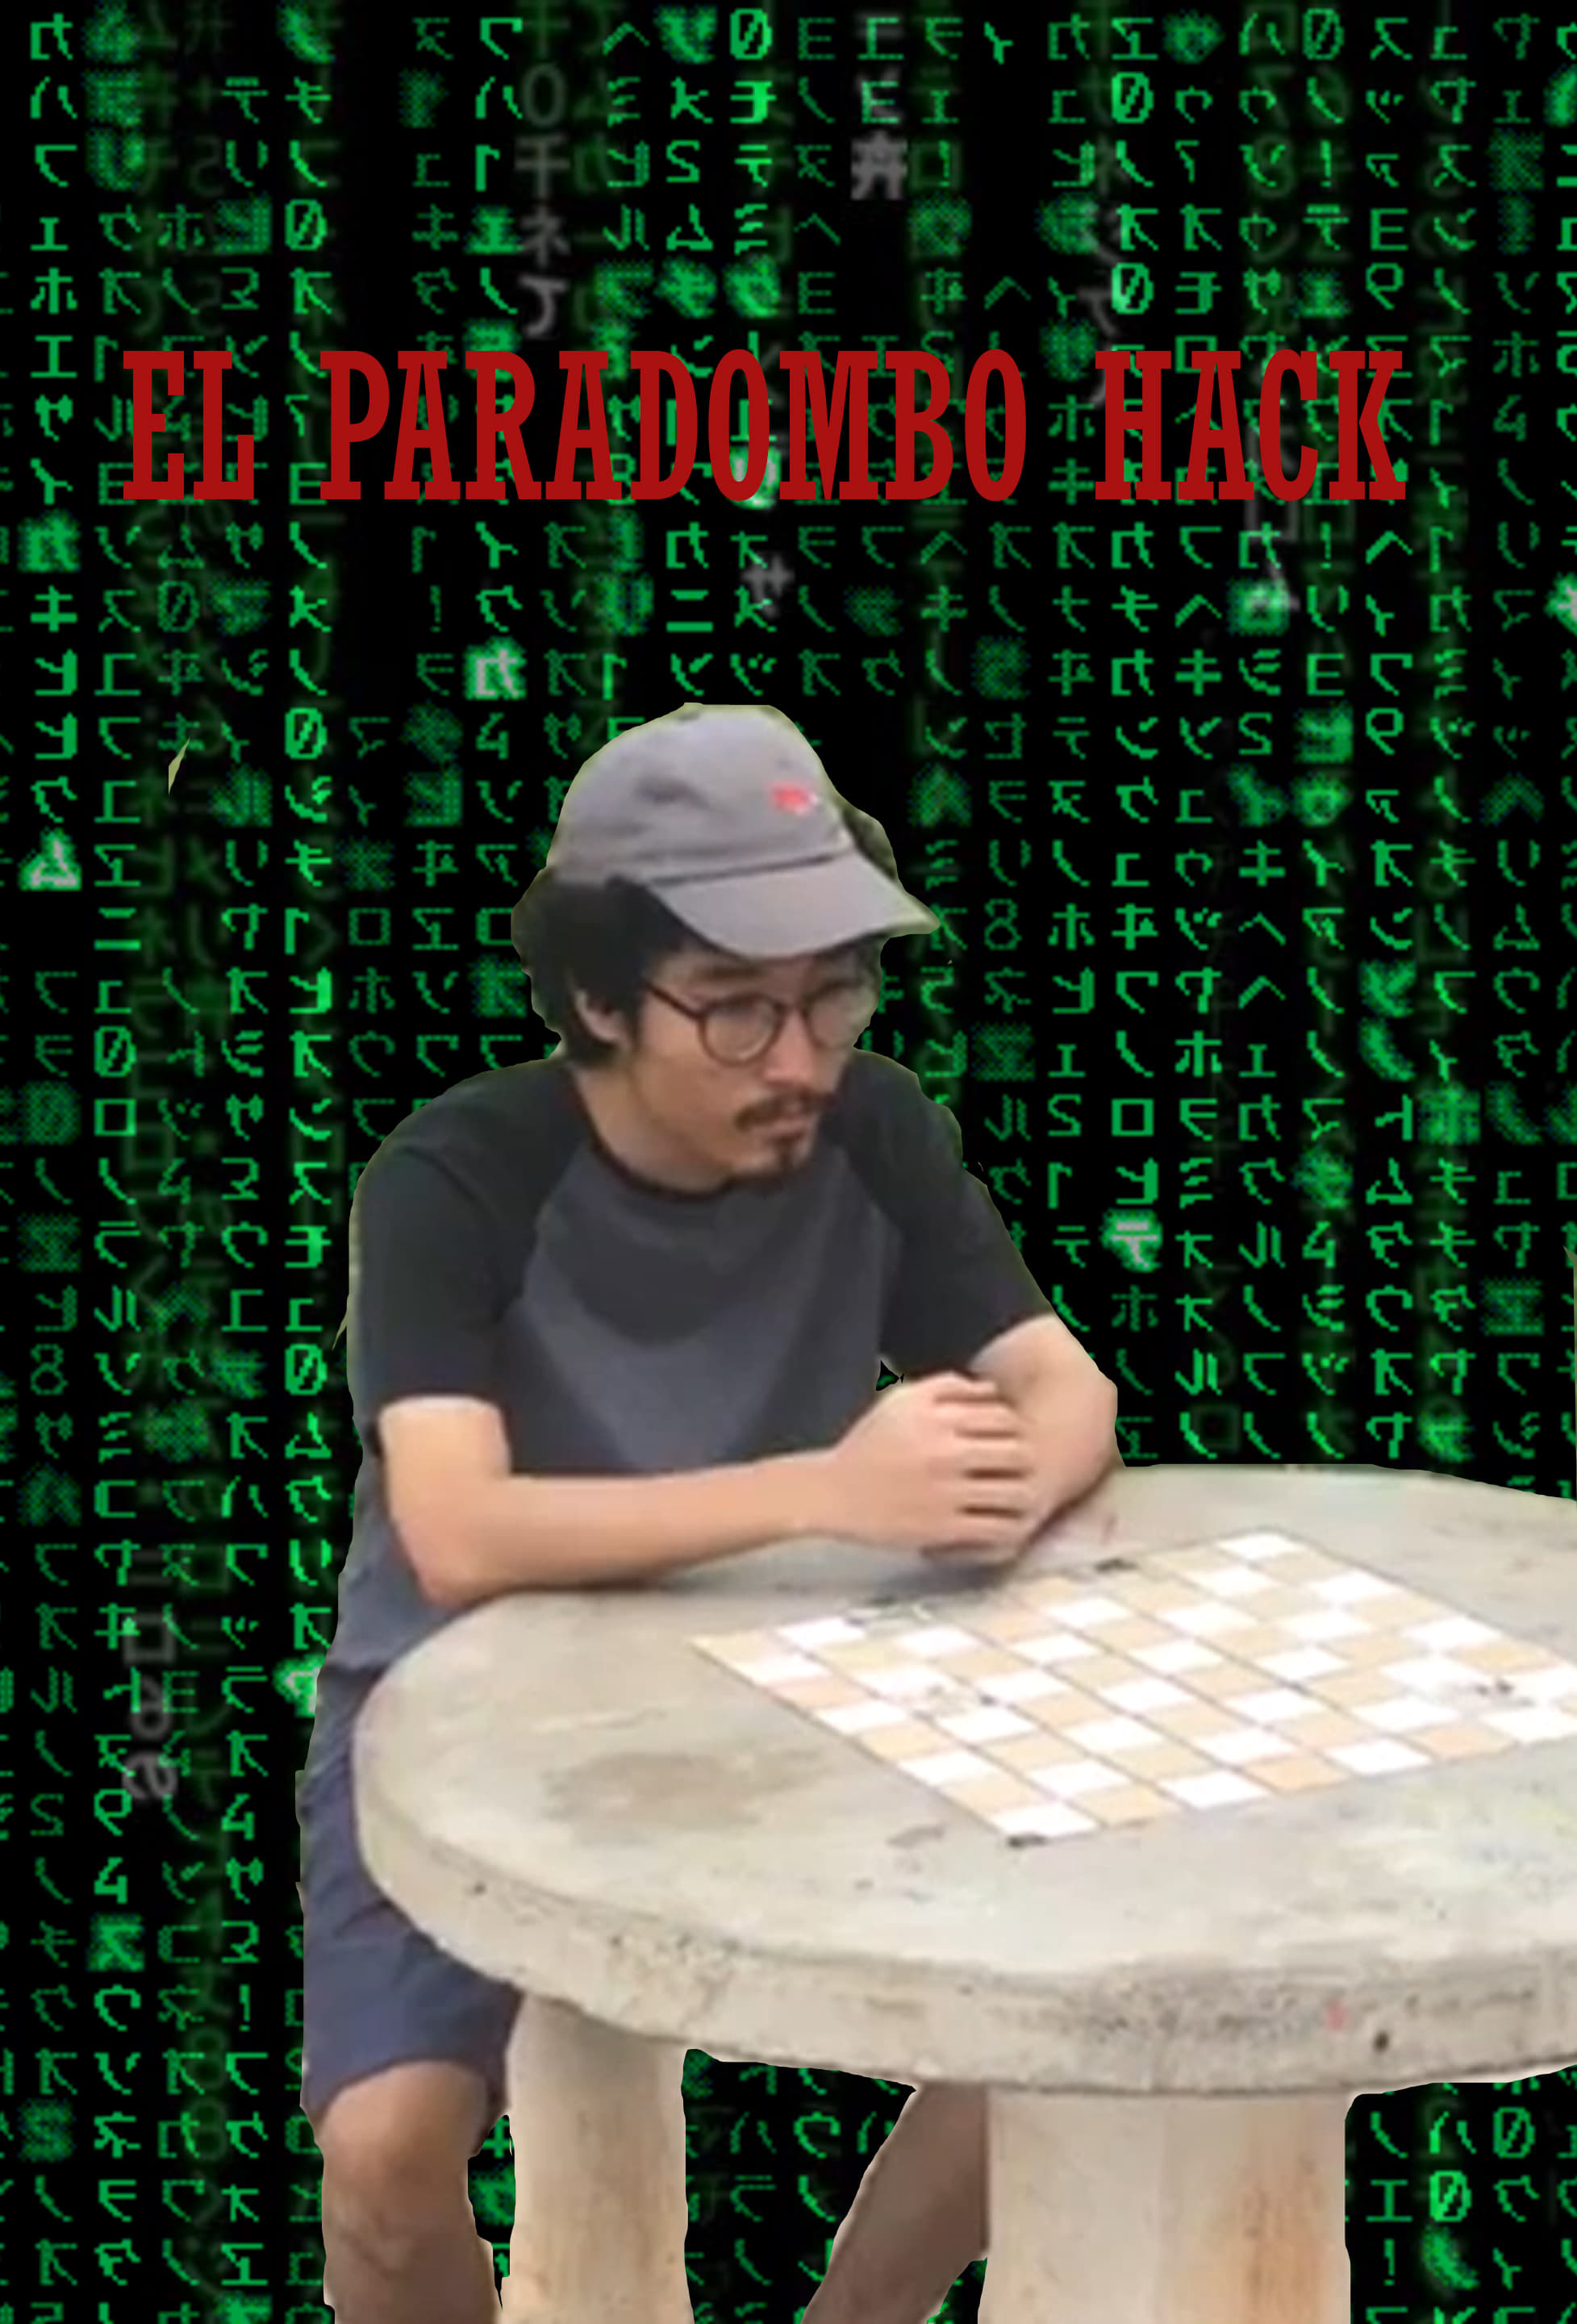 El Paradombo Hack